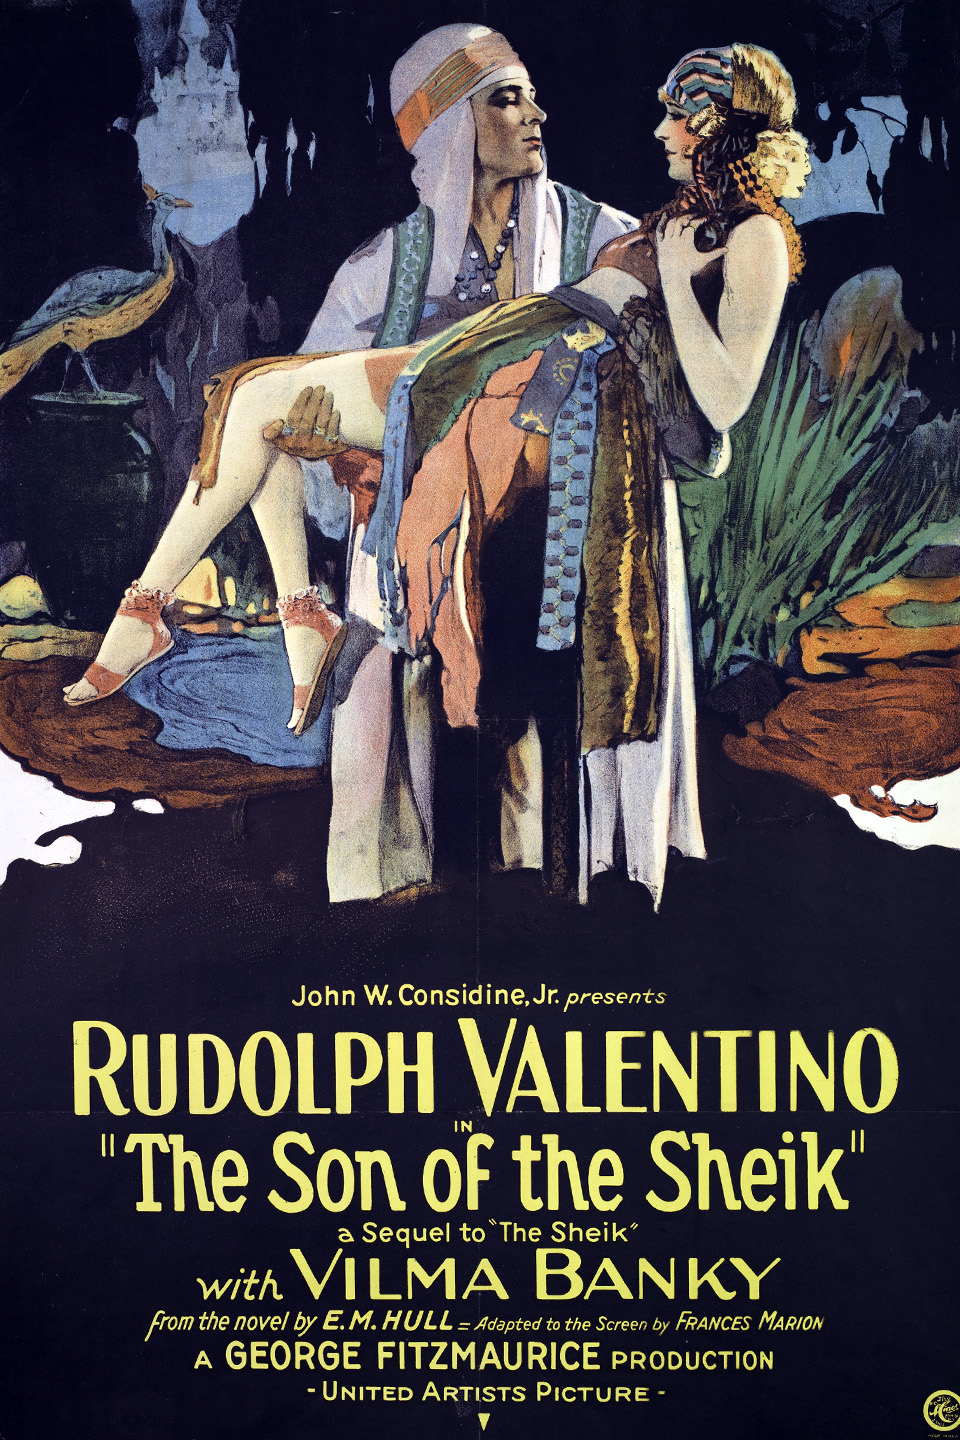 ดูหนังออนไลน์ฟรี The Son of the Sheik (1926) เดอะ ซัน ออฟ เดอะ ชีค